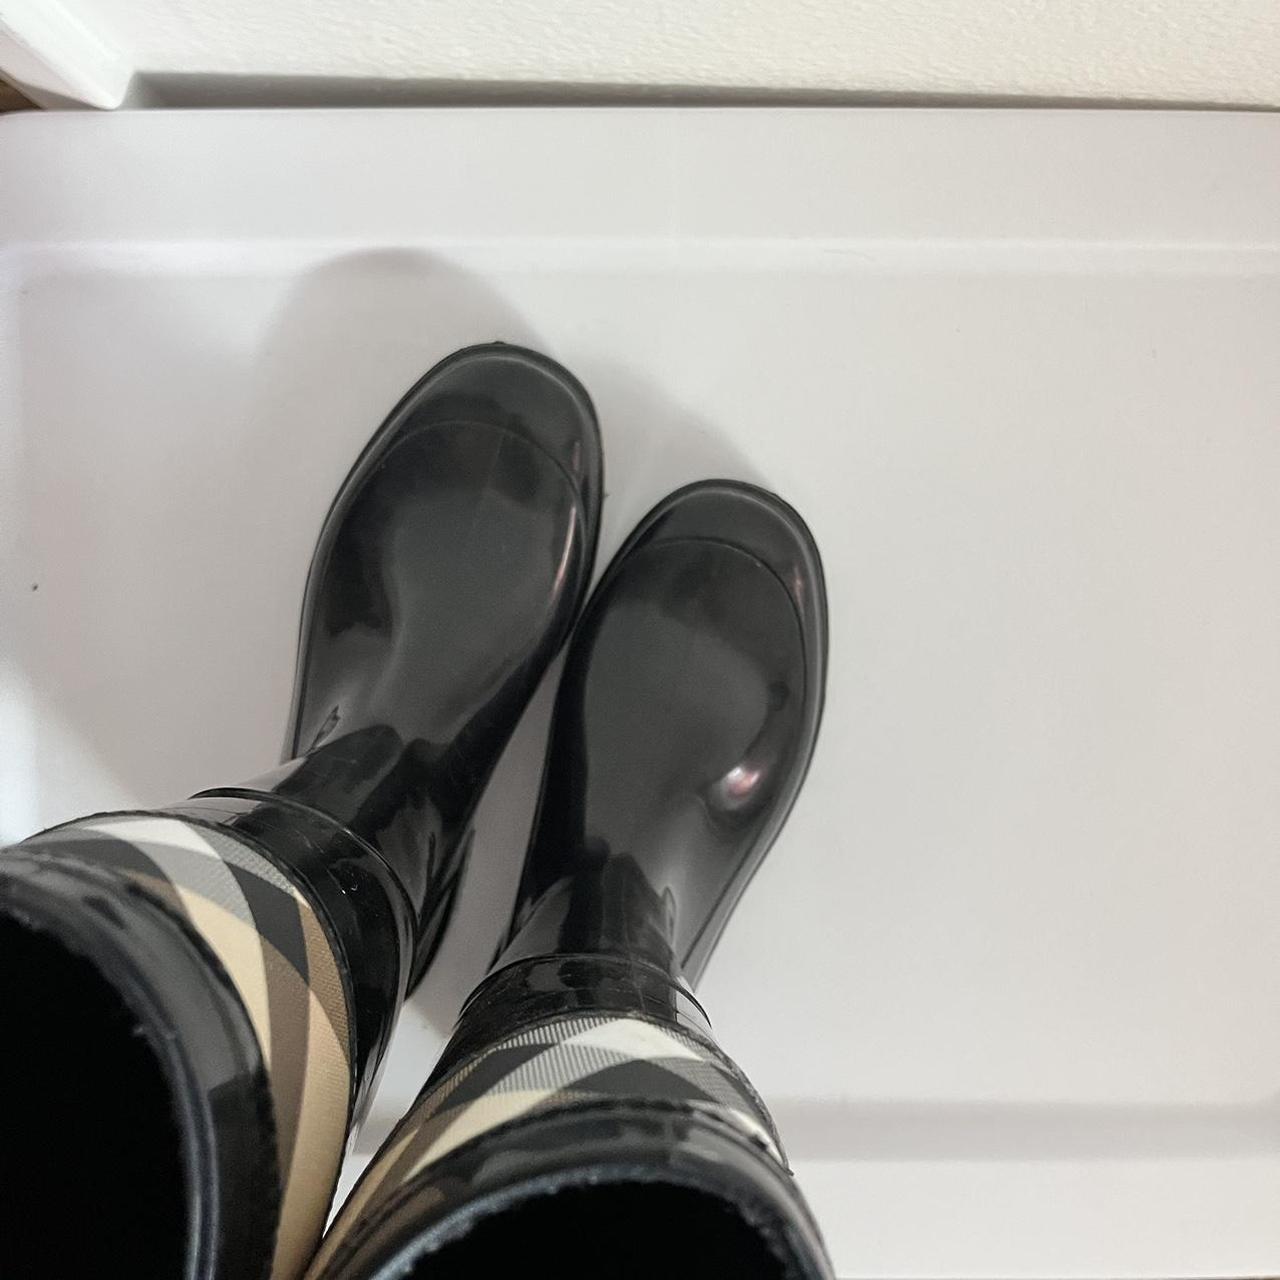 Burberry Rain Boots, Women's Shoes